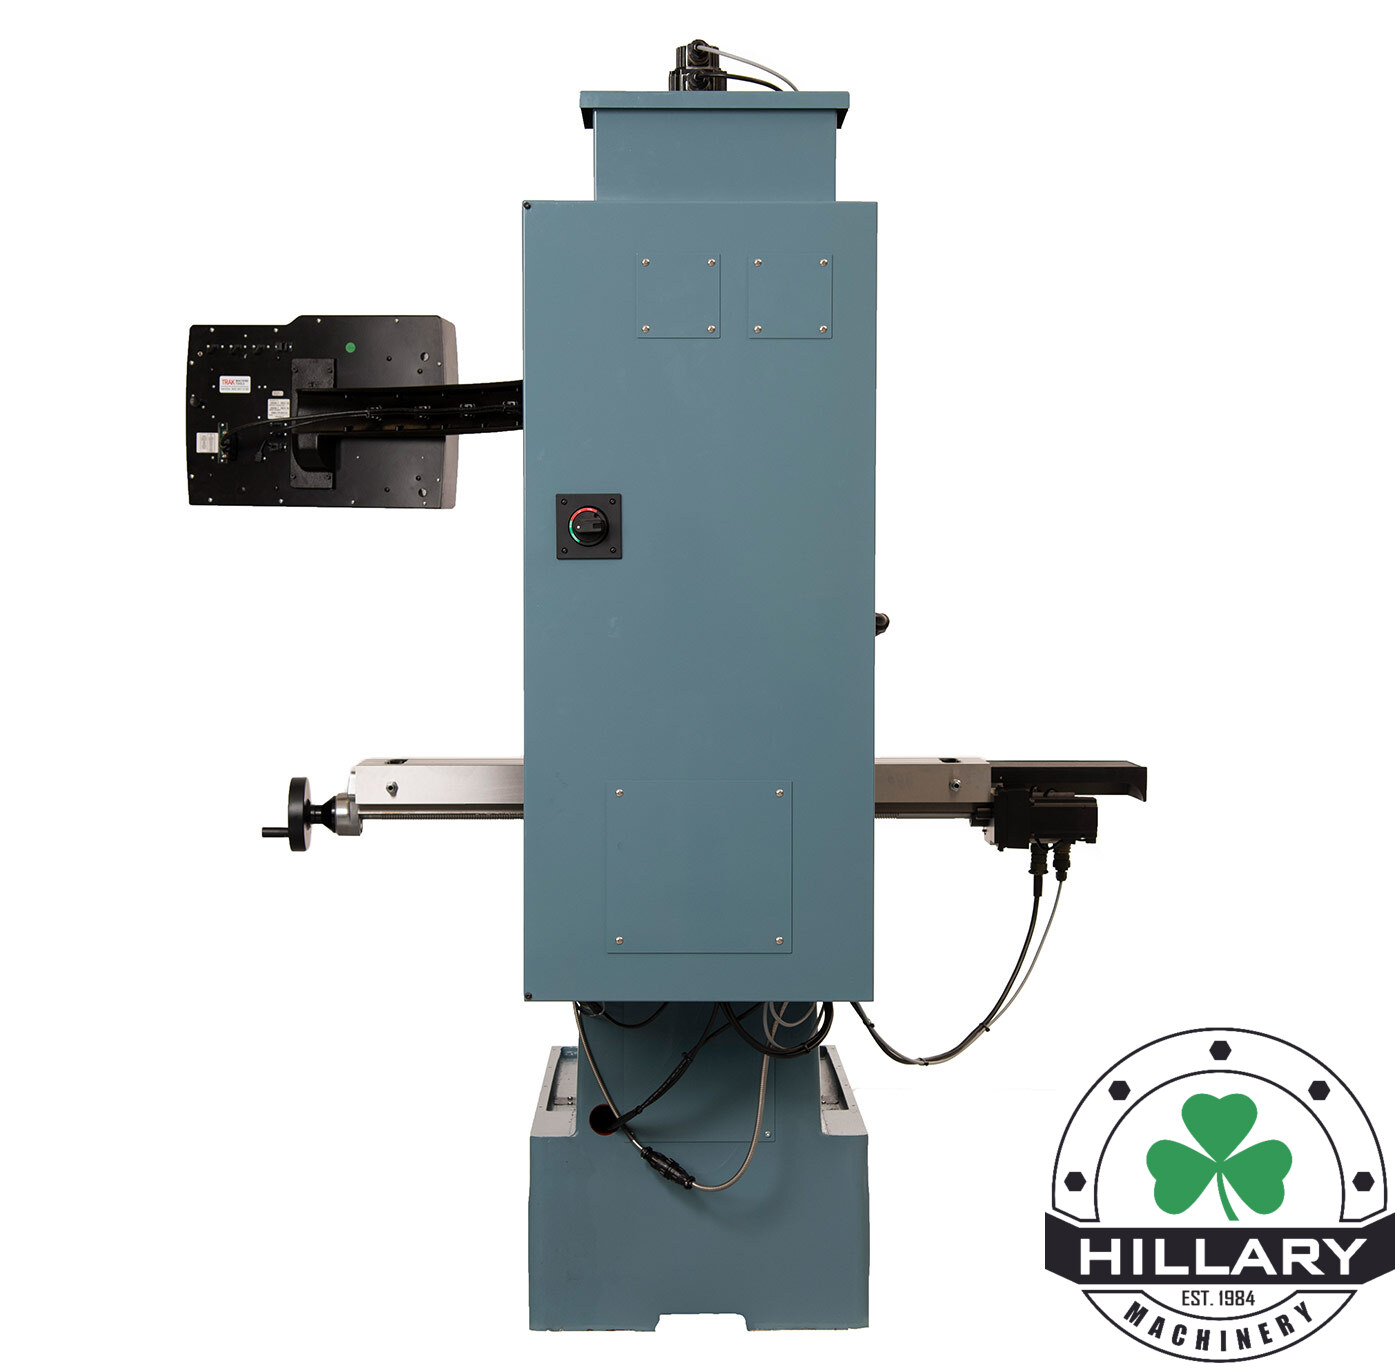 TRAK MACHINE TOOLS TRAK DPM RX2 Tool Room Mills | Hillary Machinery